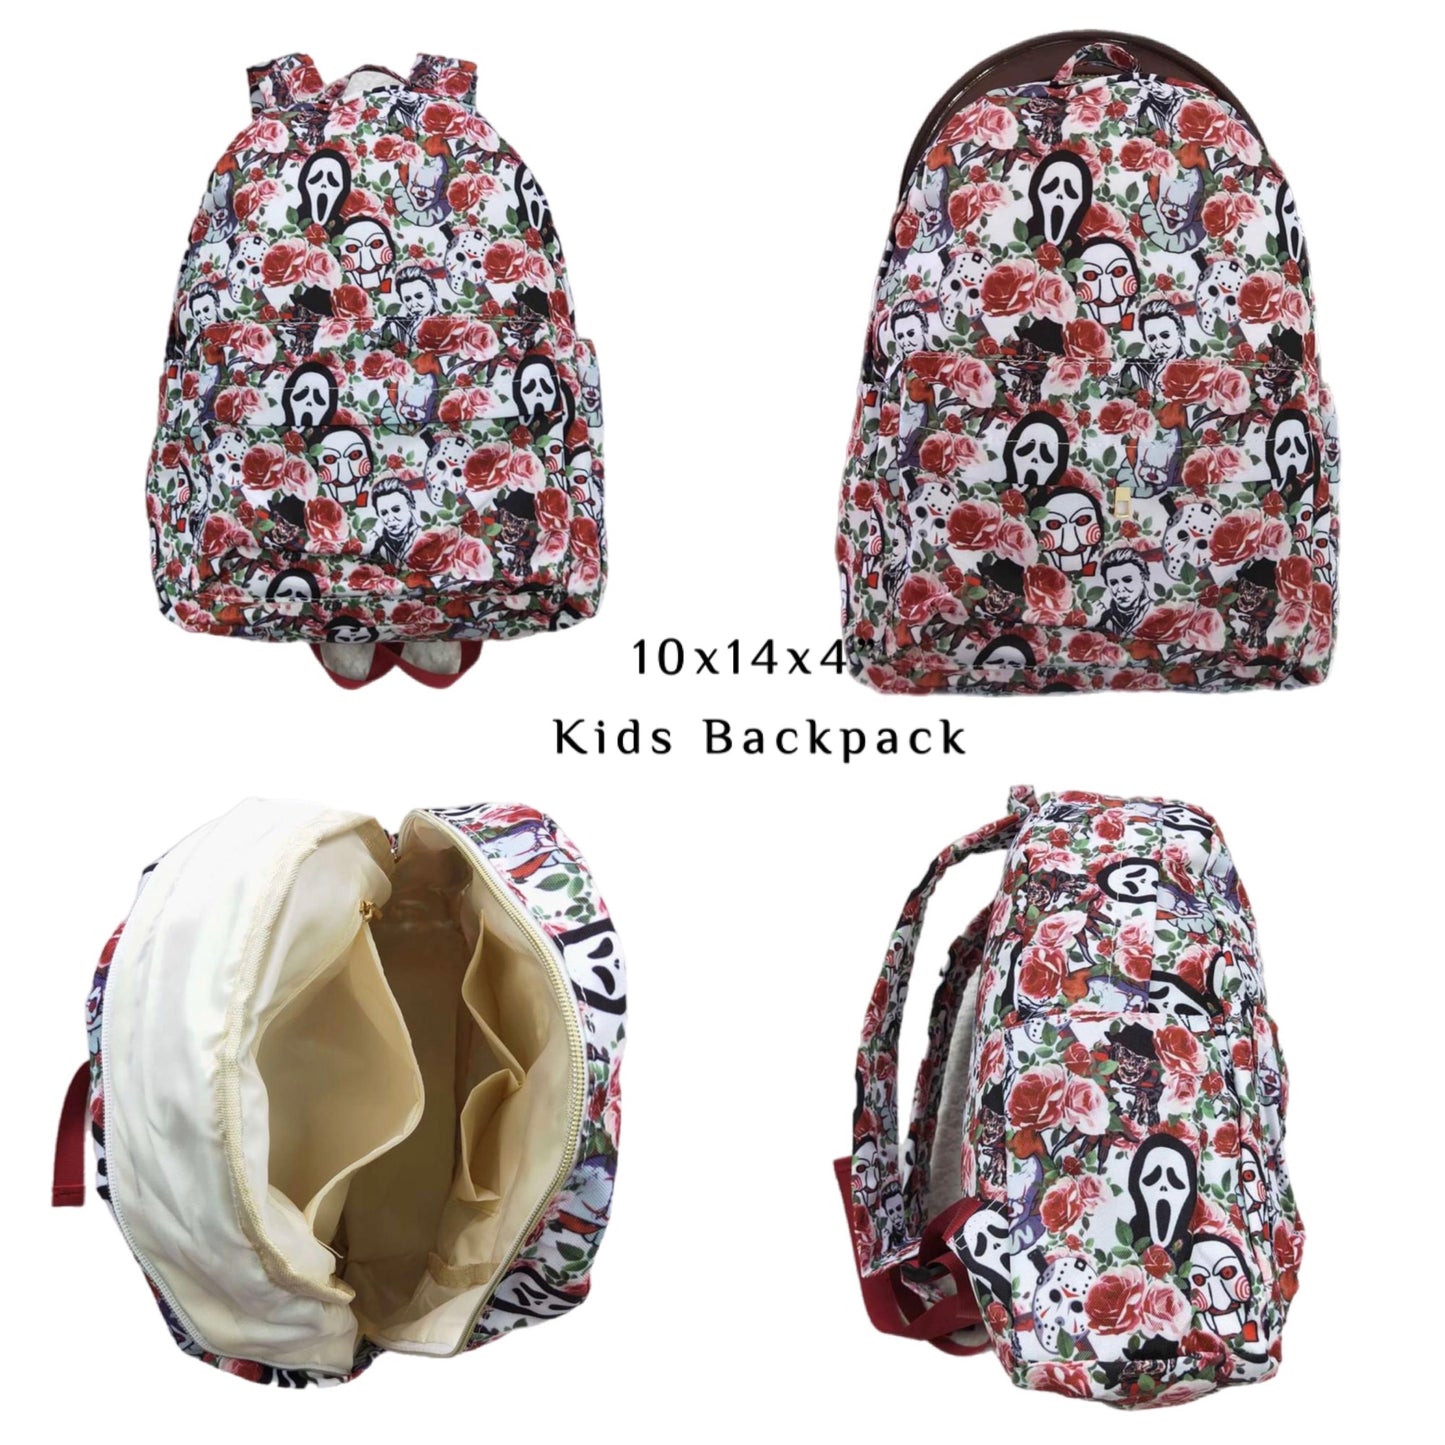 ᴡᴇᴇᴋʟʏ ᴘʀᴇ ᴏʀᴅᴇʀ Backpack- Horror Florals 10x14x4"